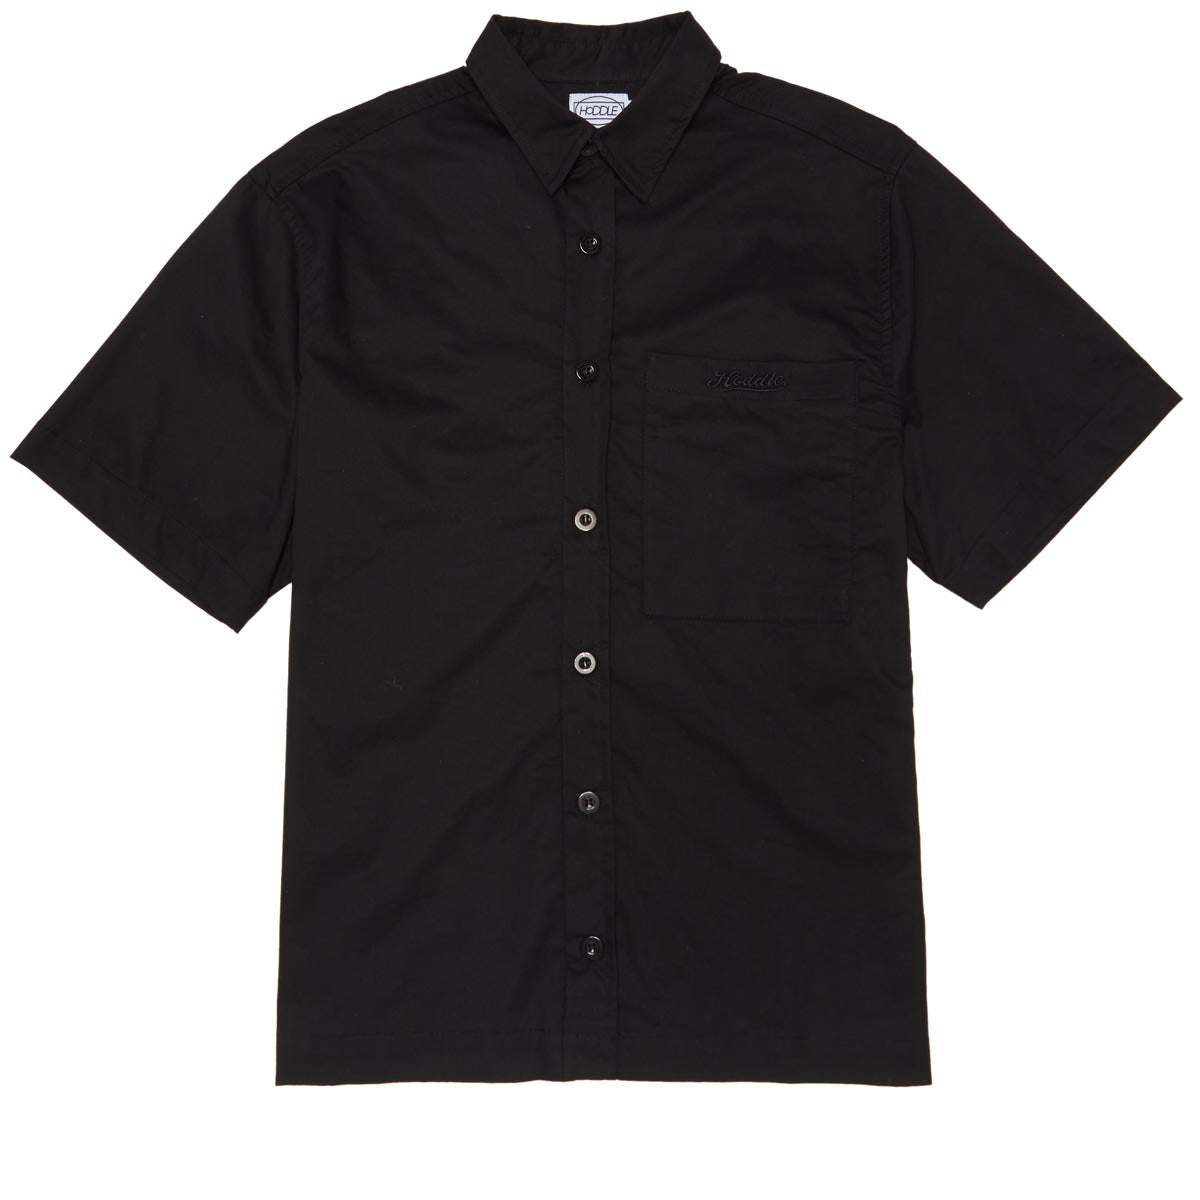 Hoddle Cheval Shirt - Black image 1